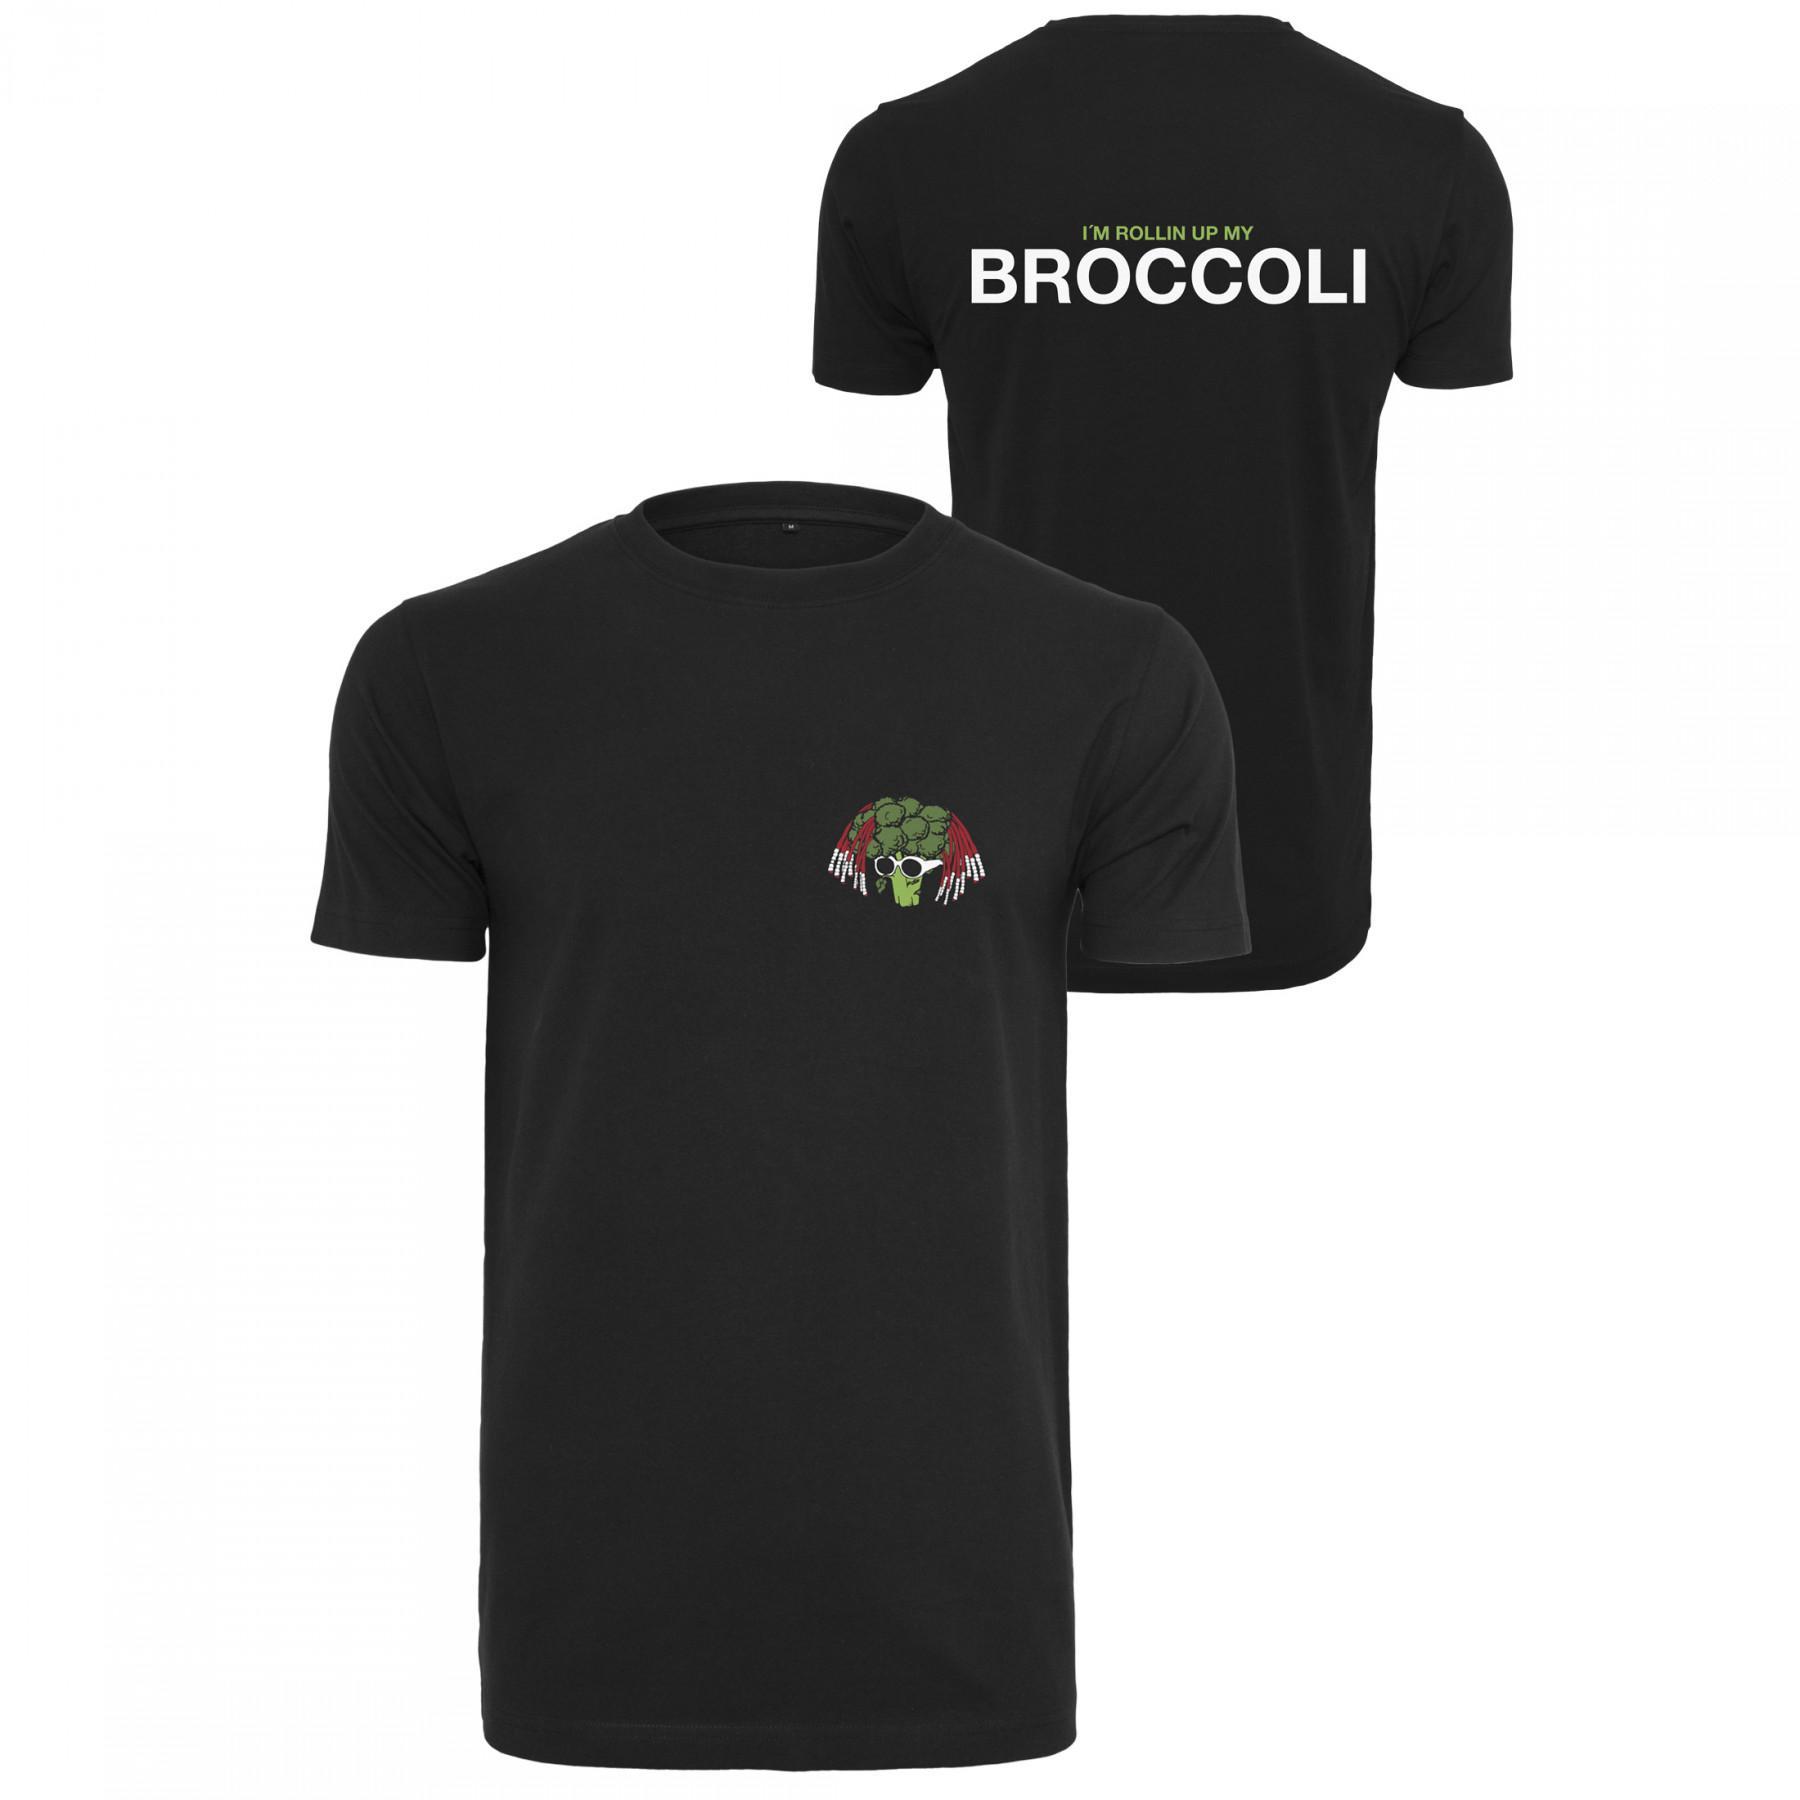 Camiseta Mister Tee broccoli